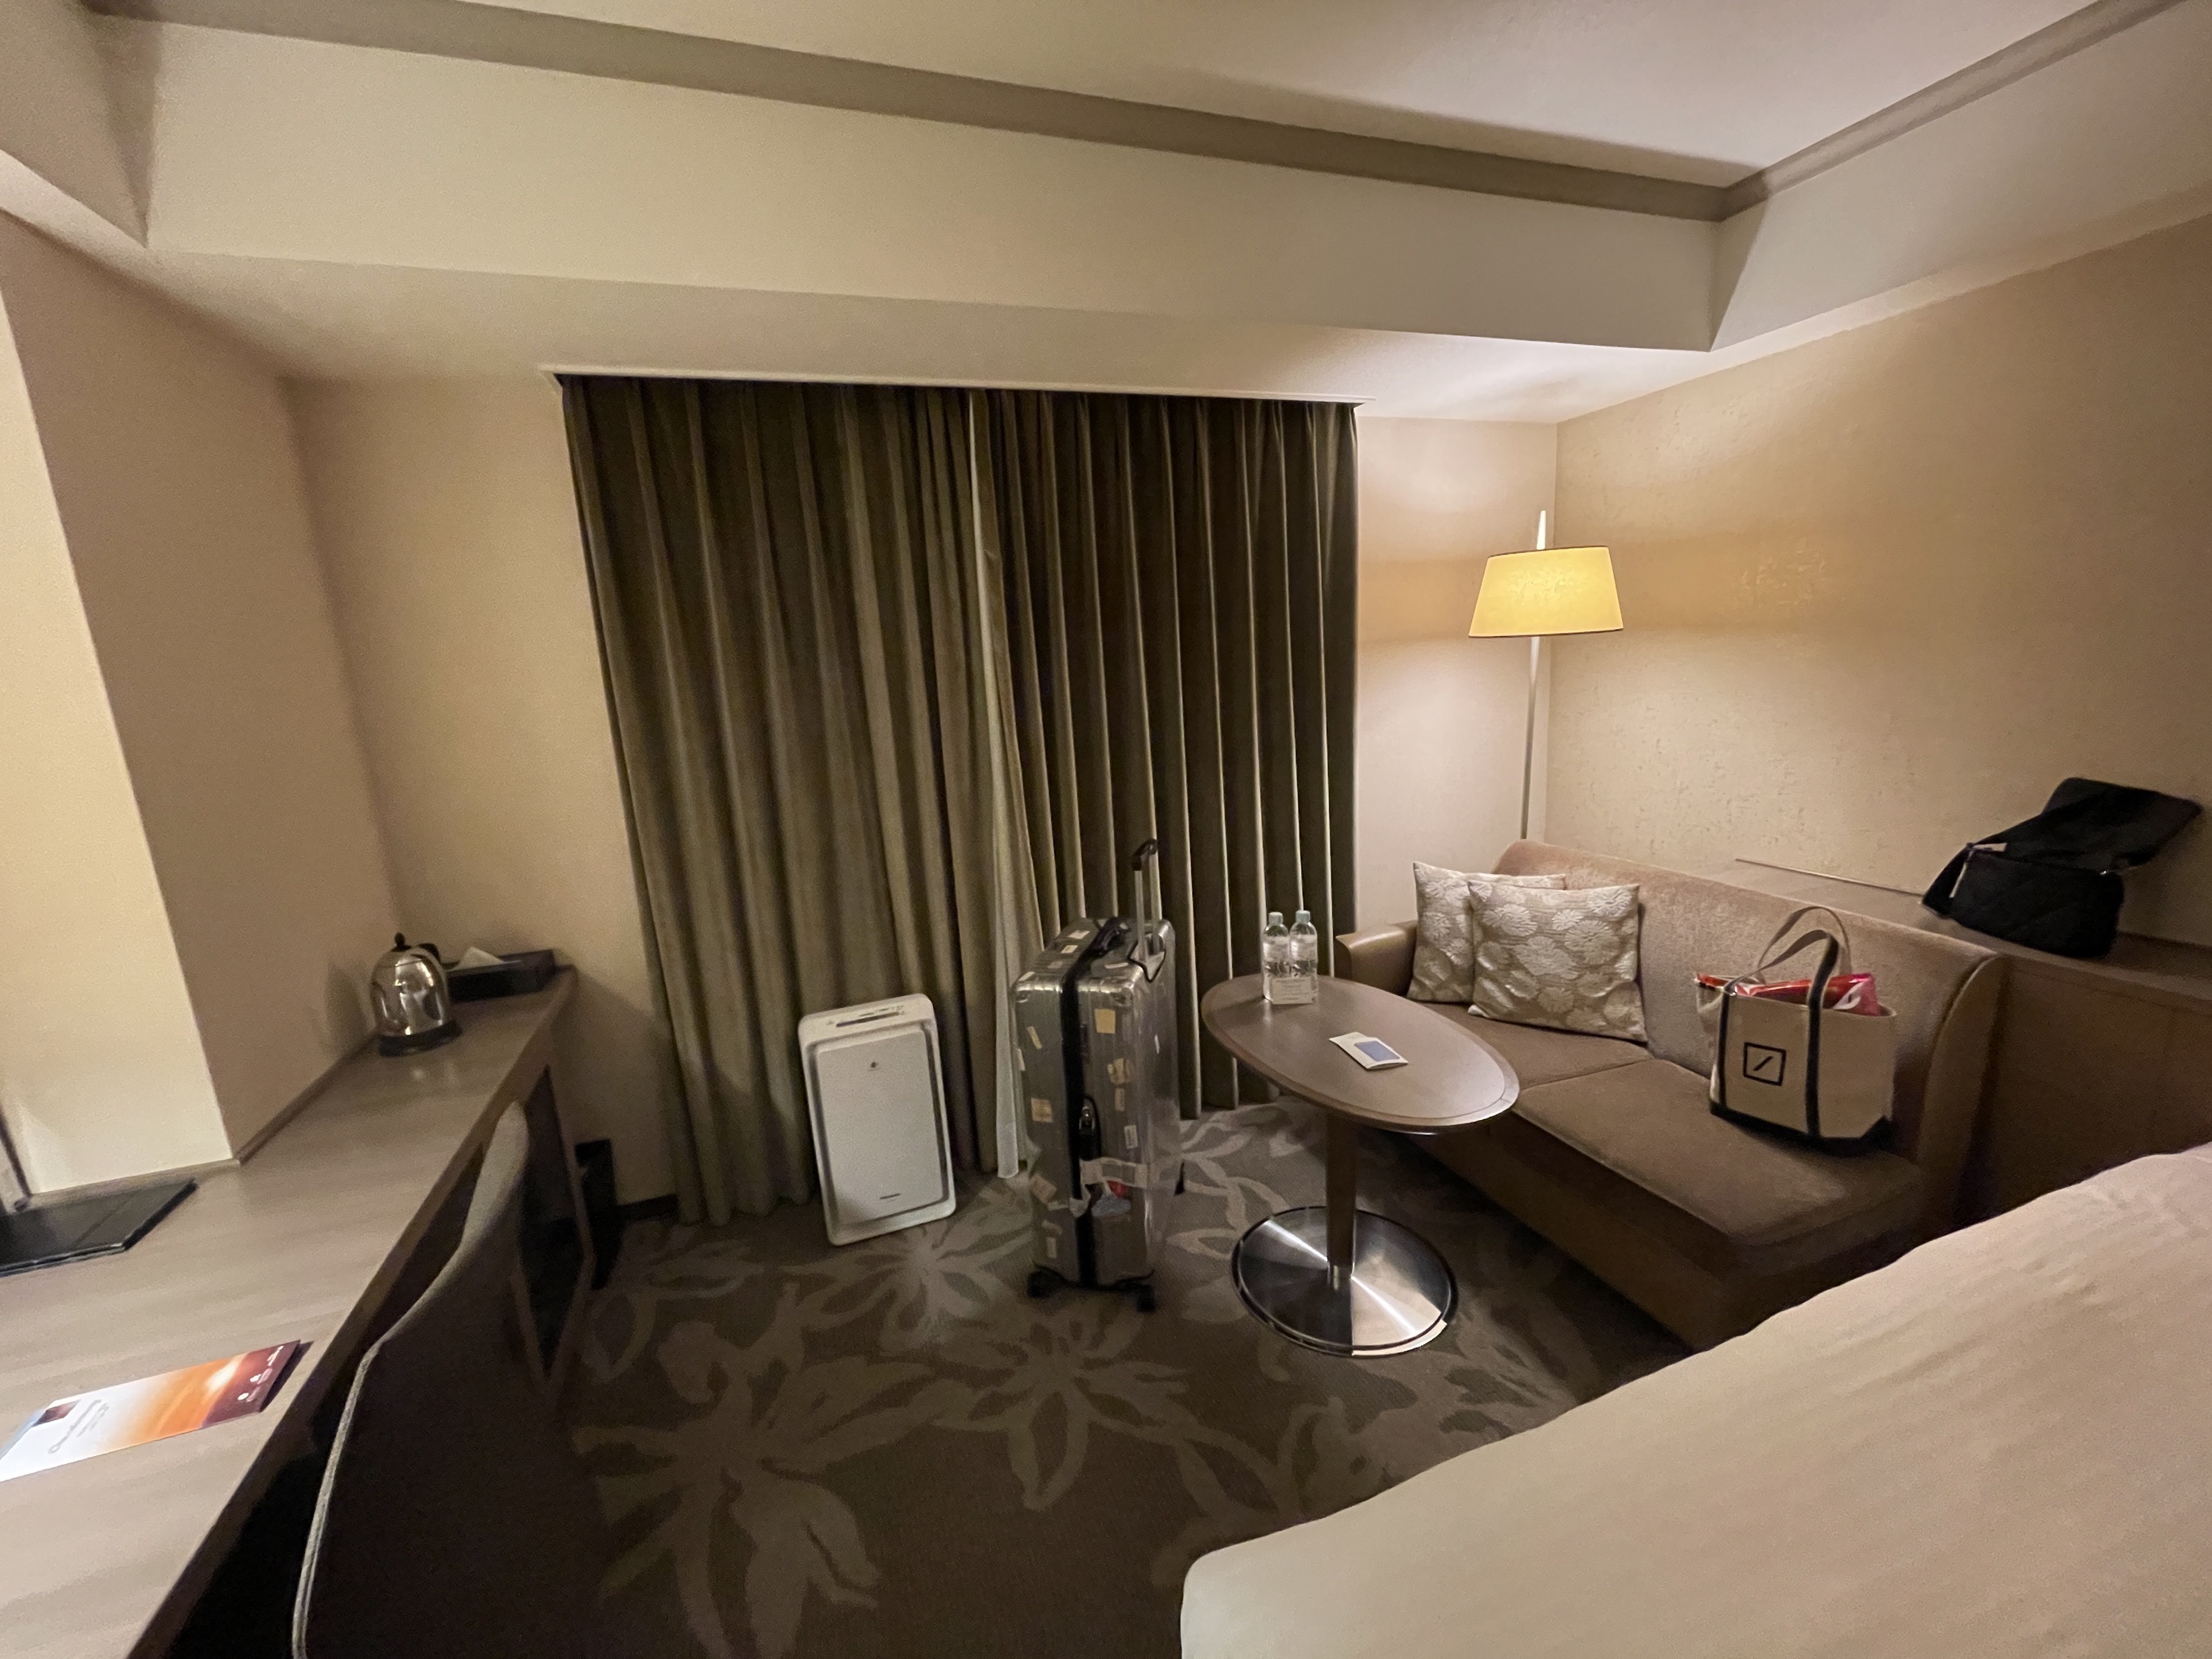 房间在日本酒店里算大的，装修简洁，浴室用品一应俱全，洗护用品是LA MER的。前台服务热情周到，服务